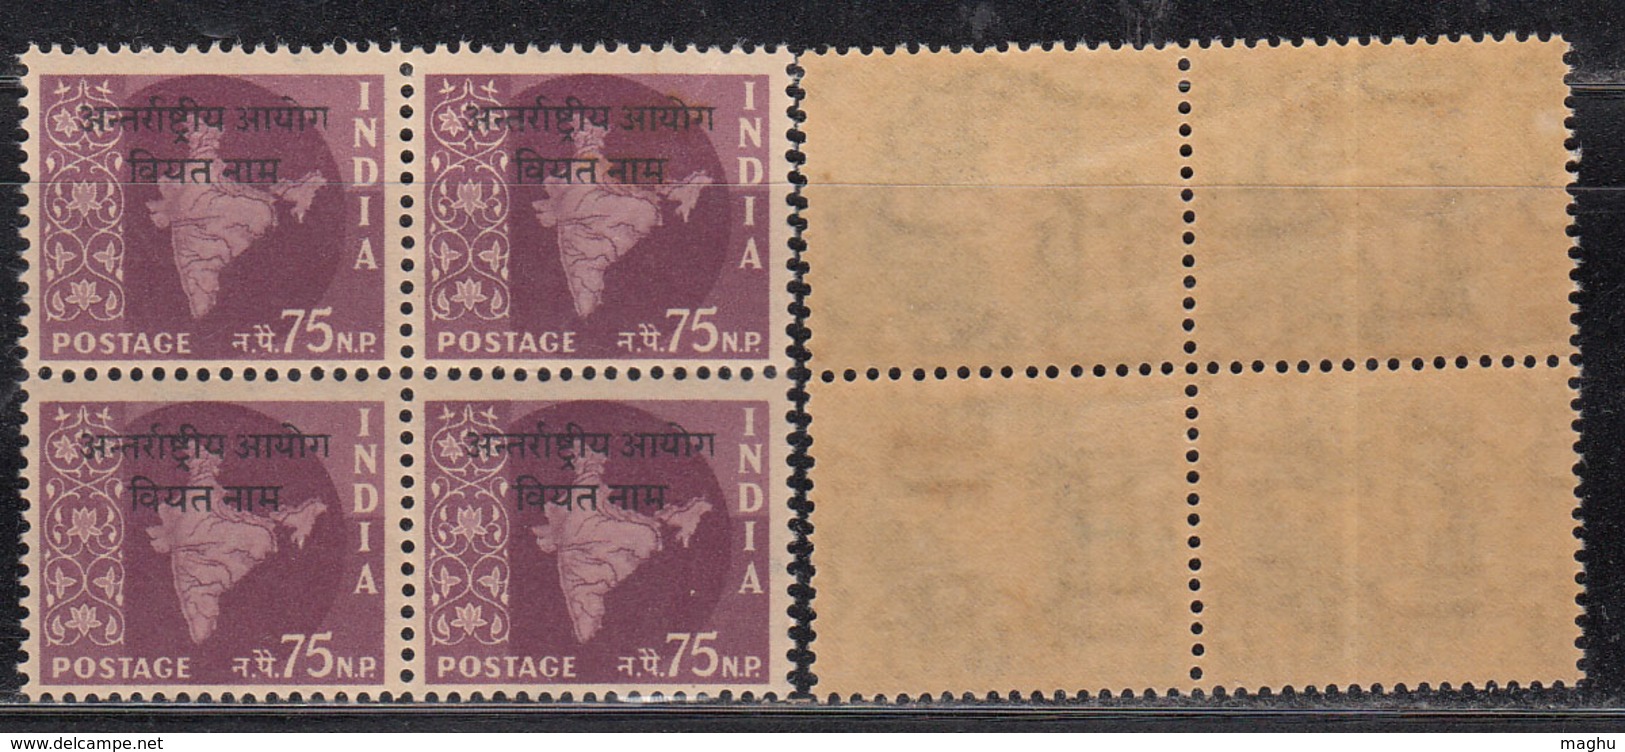 Block Of 4, 75np Ovpt Vietnam On Map Series,  India MNH 1962, Ashokan Watermark, - Militärpostmarken